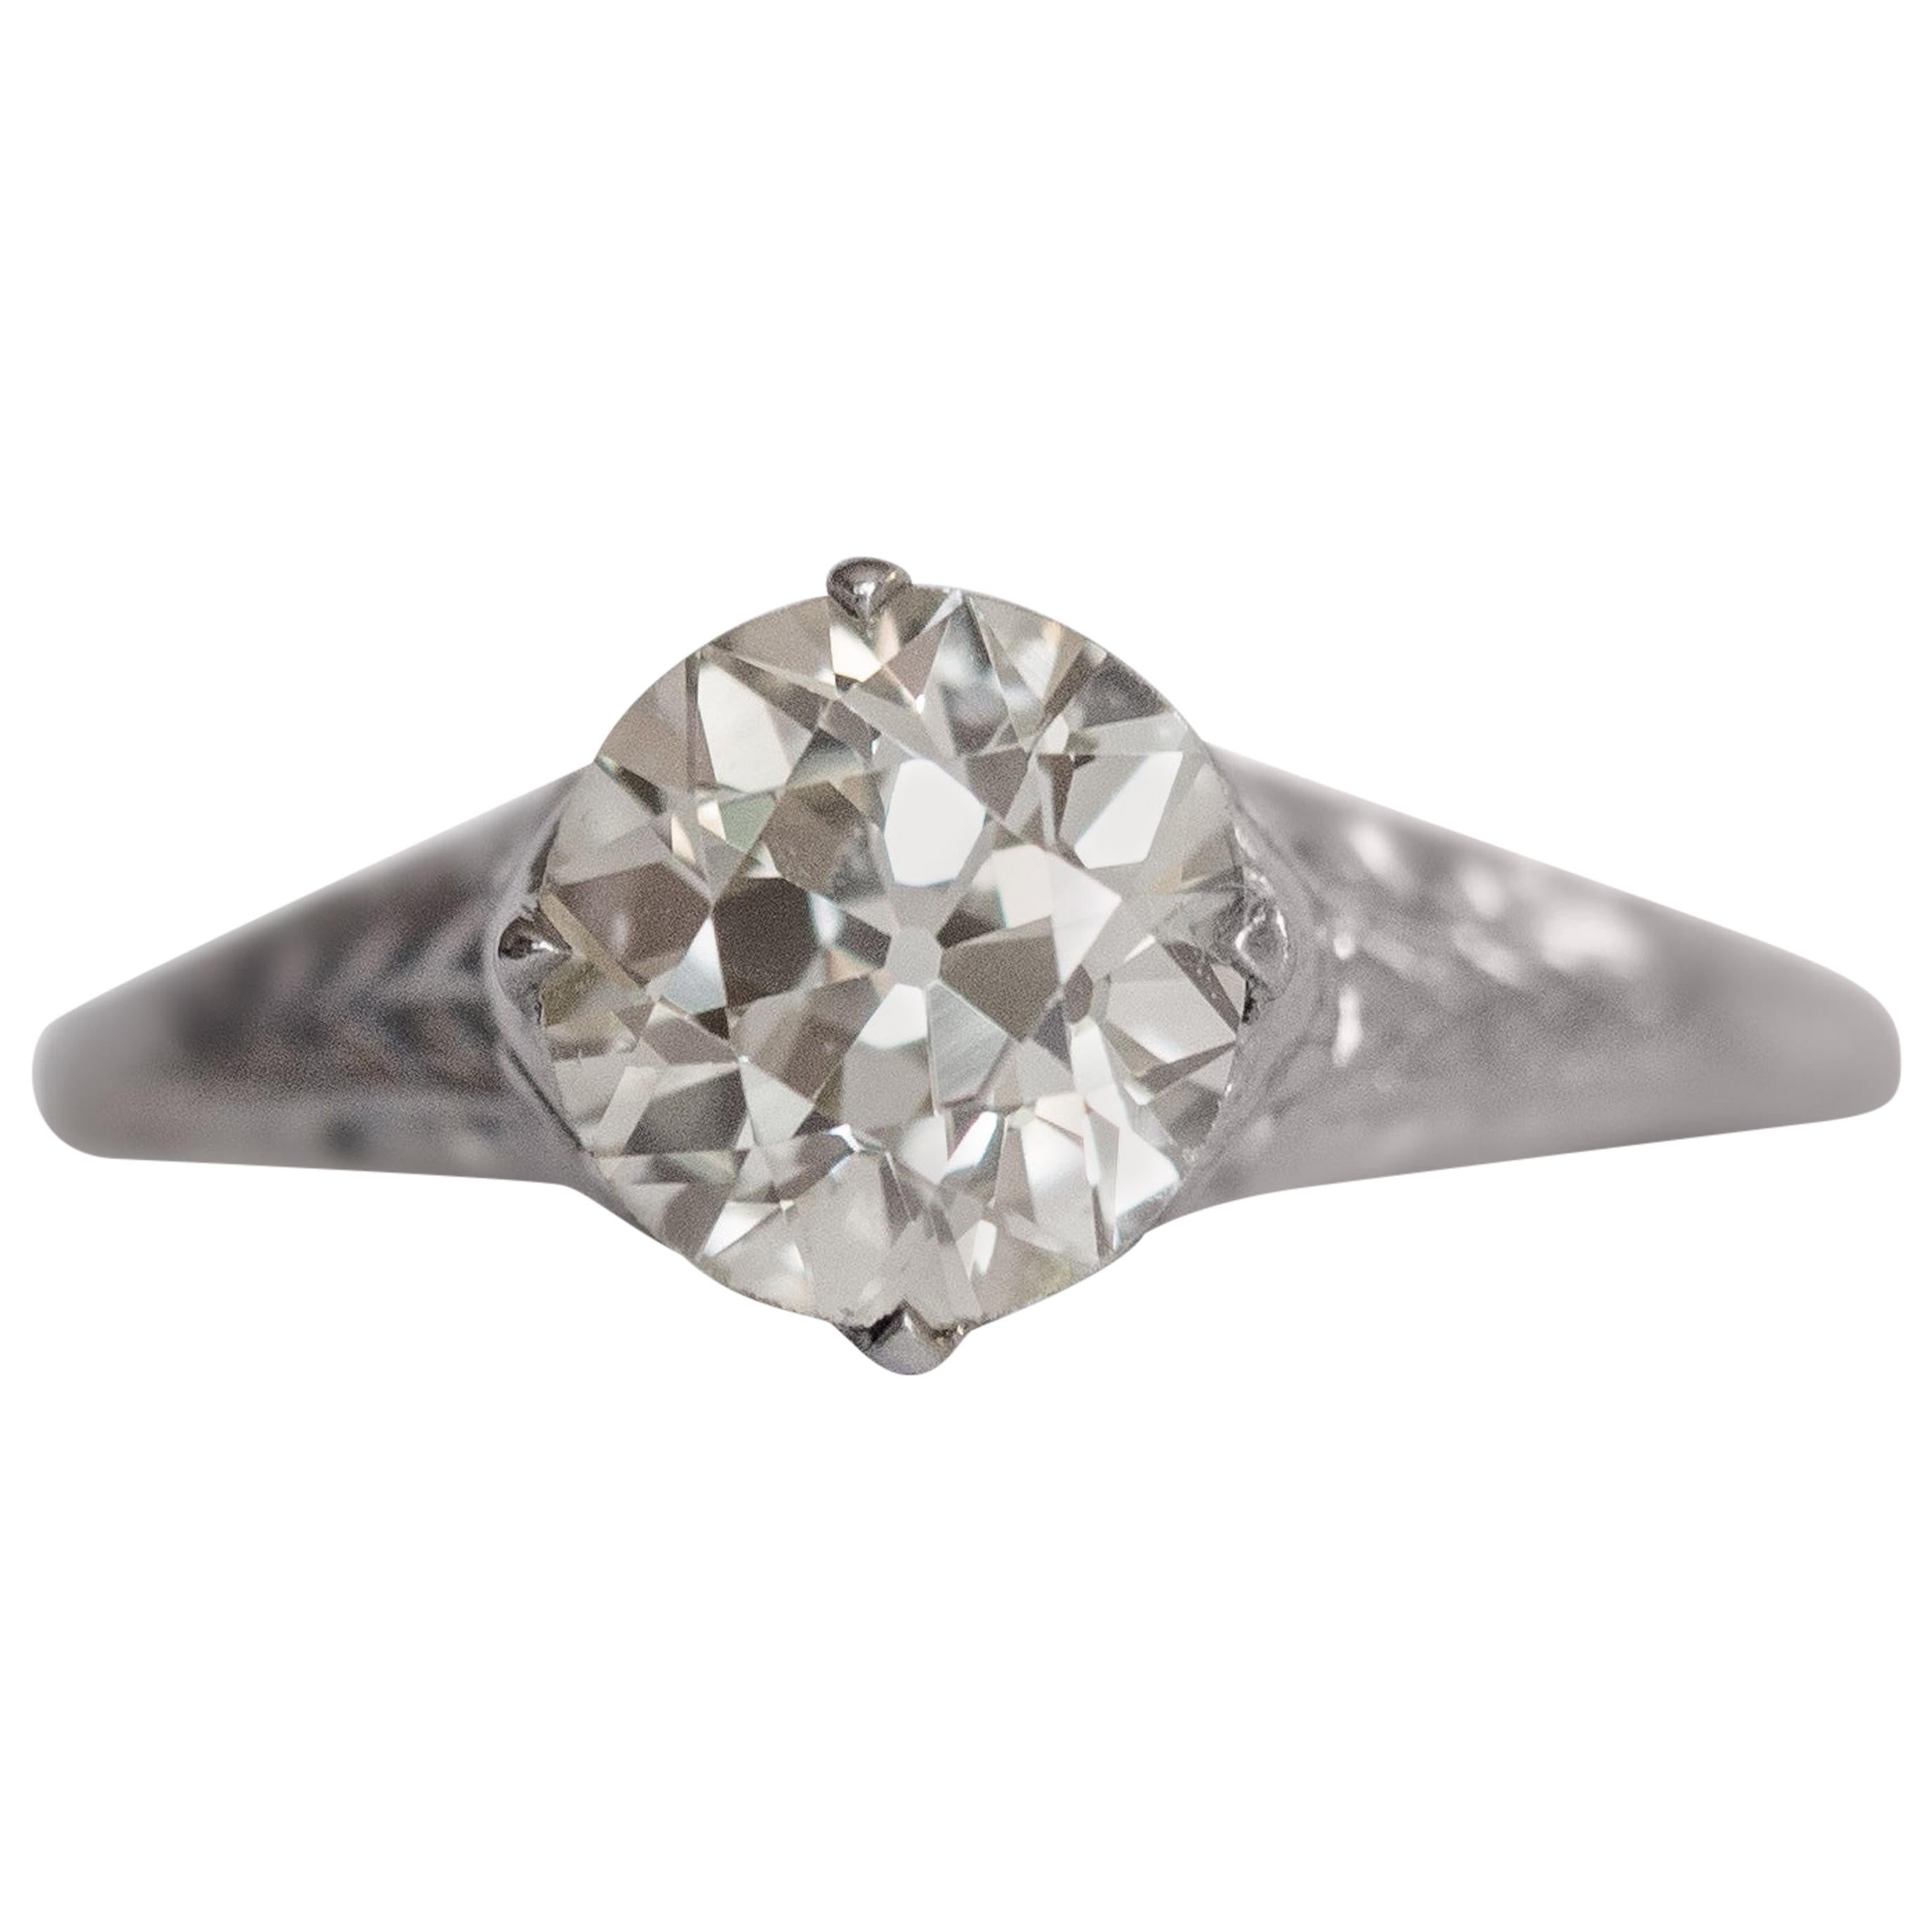 1.53 Carat Diamond Platinum Engagement Ring